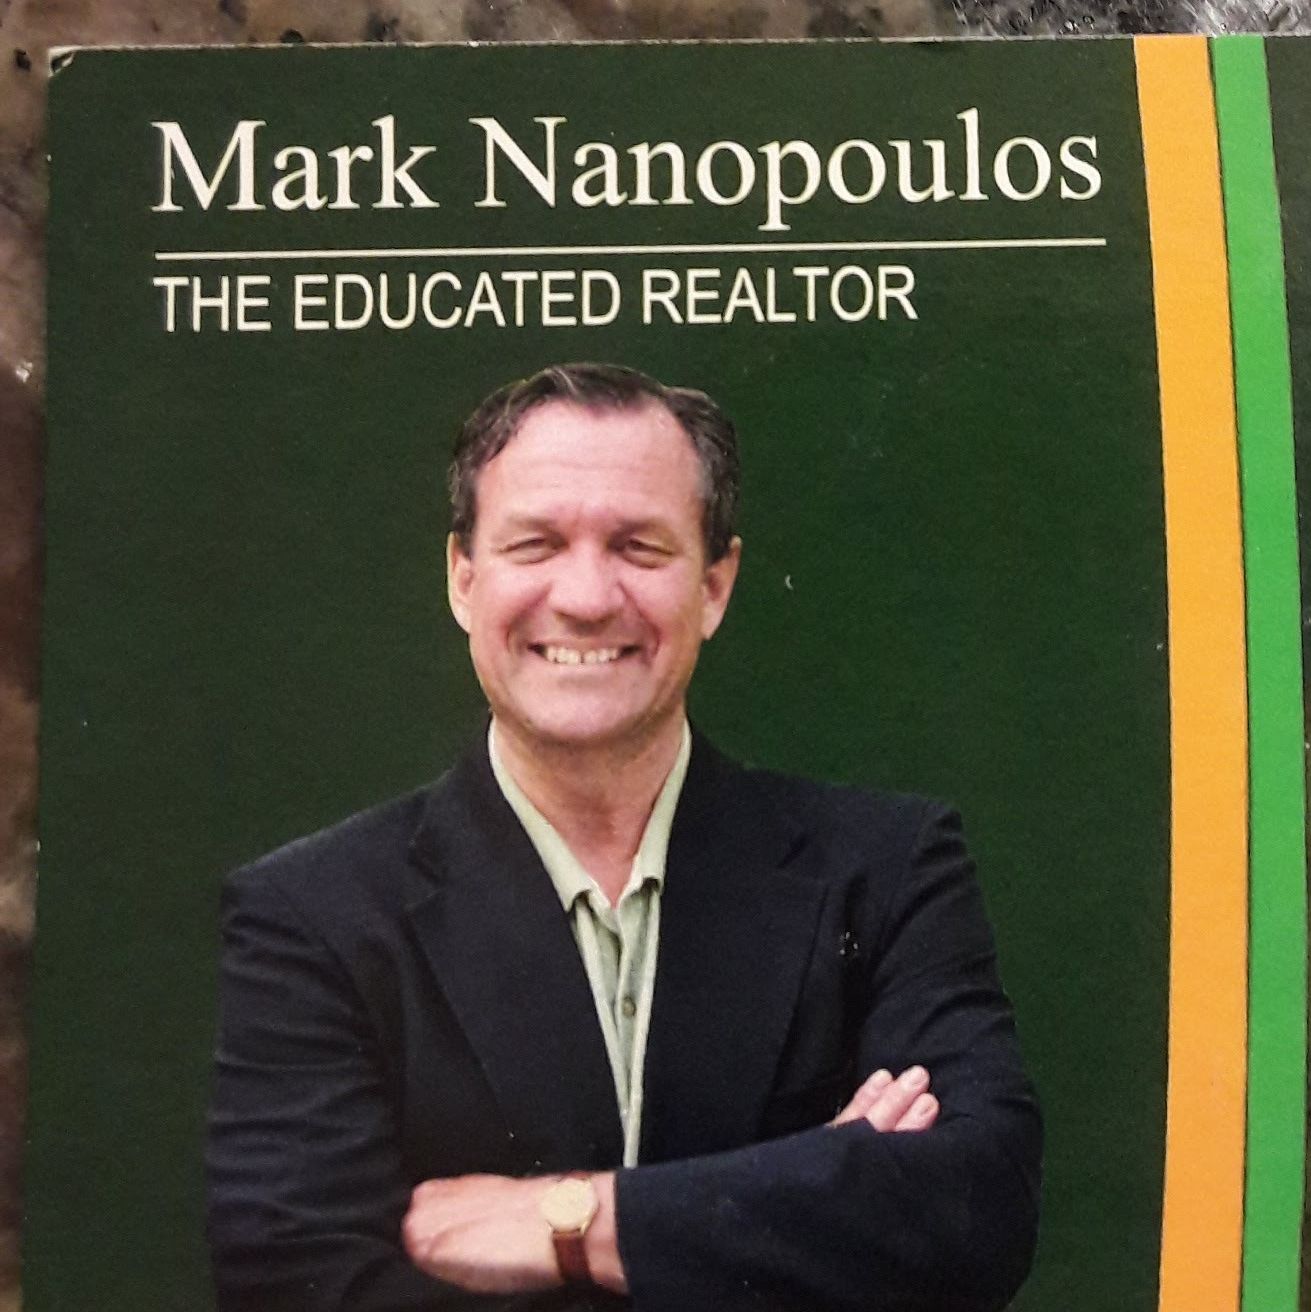 Mark Nanopoulos